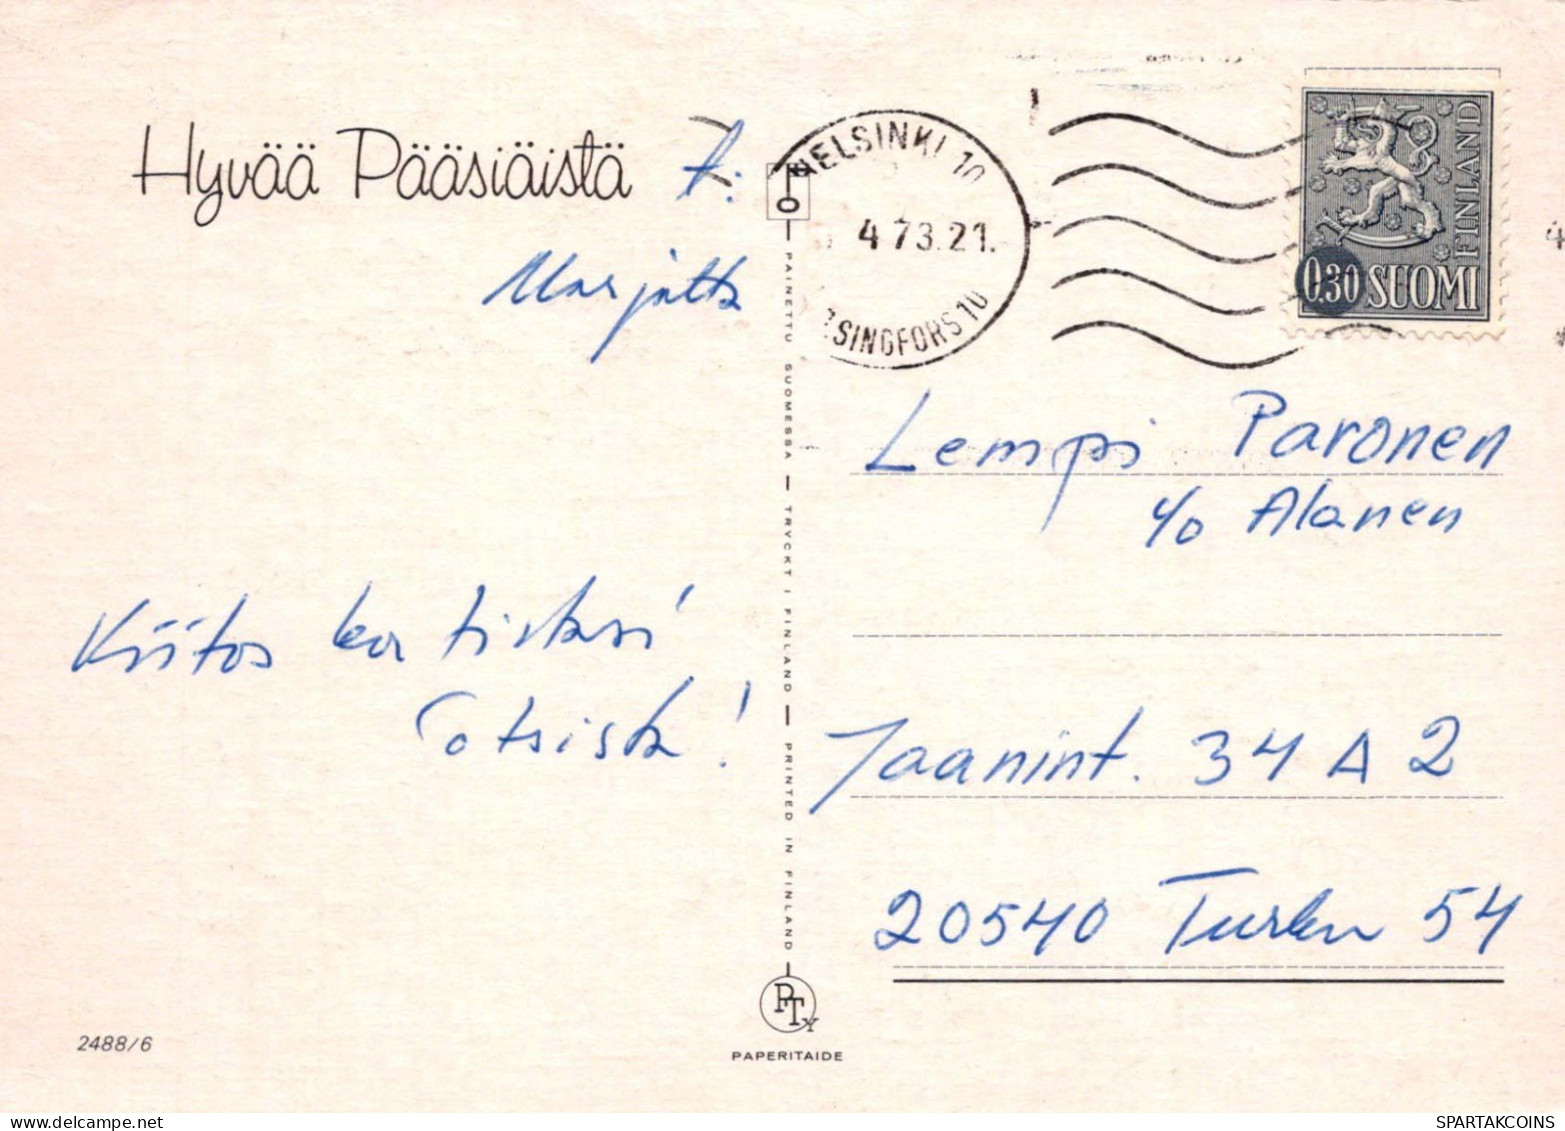 PASQUA POLLO UOVO Vintage Cartolina CPSM #PBO718.A - Easter